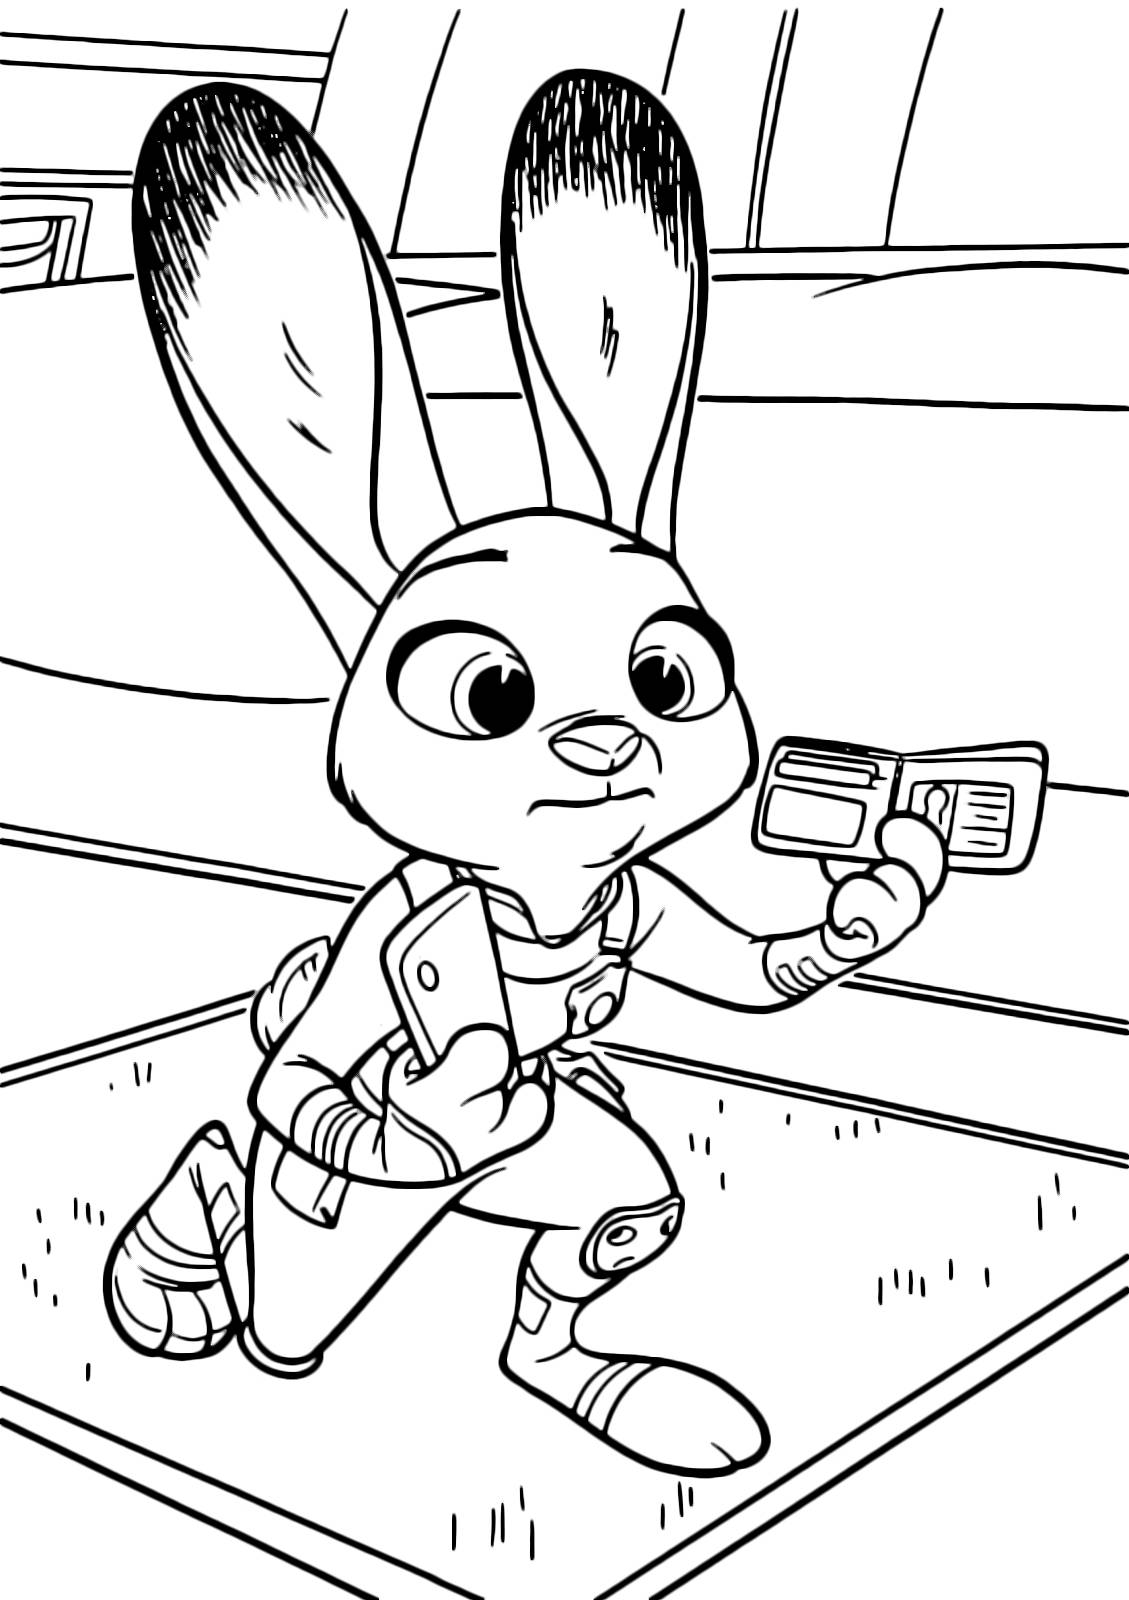 Judy at work